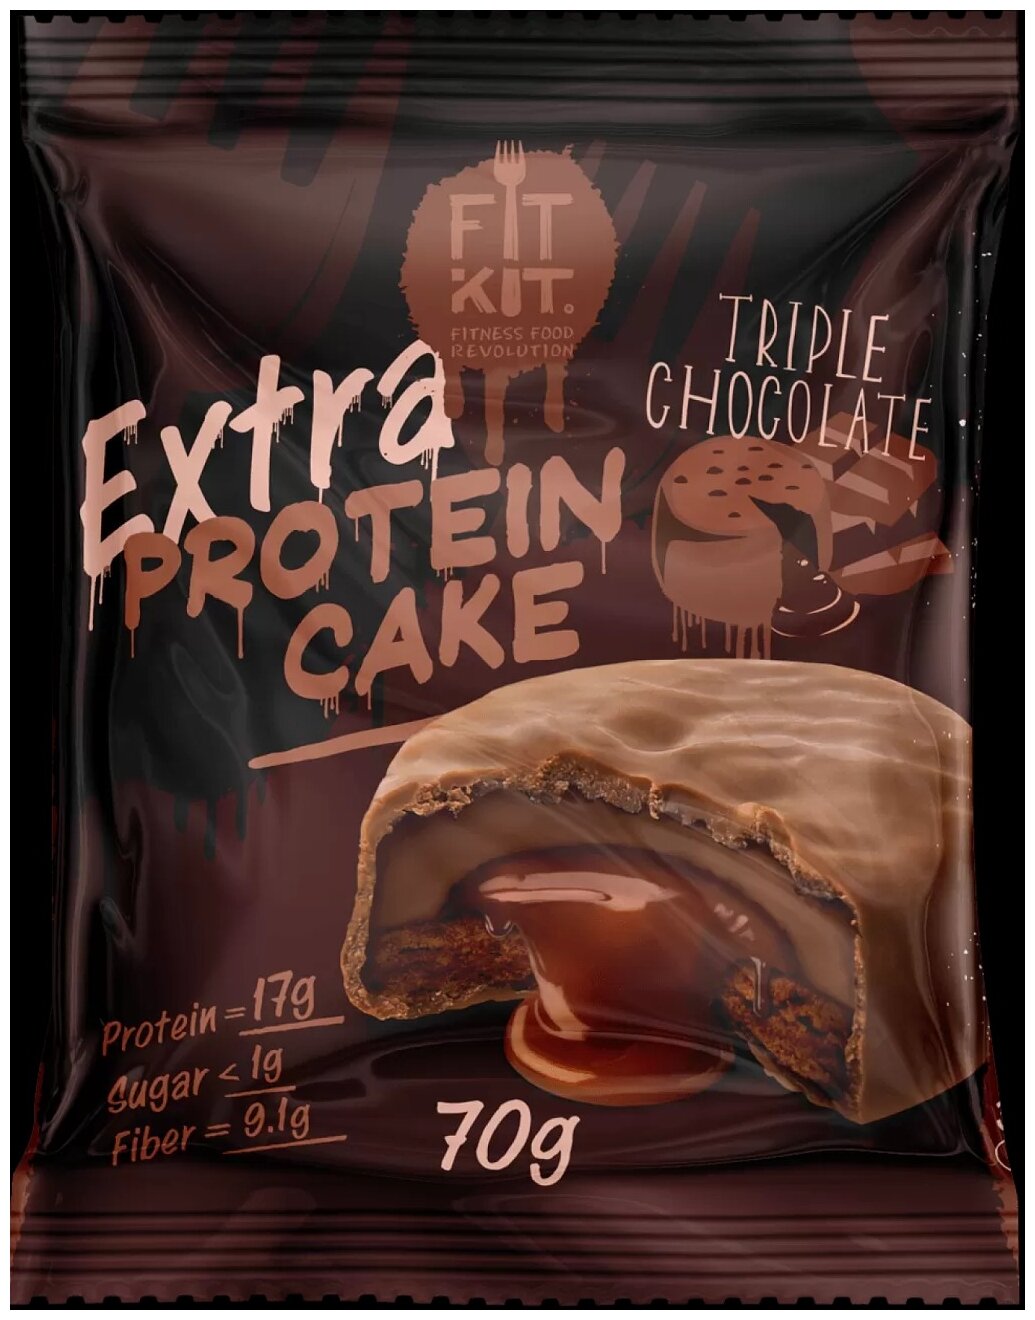 Fit Kit, Protein Cake EXTRA, 70г (Тройной шоколад)